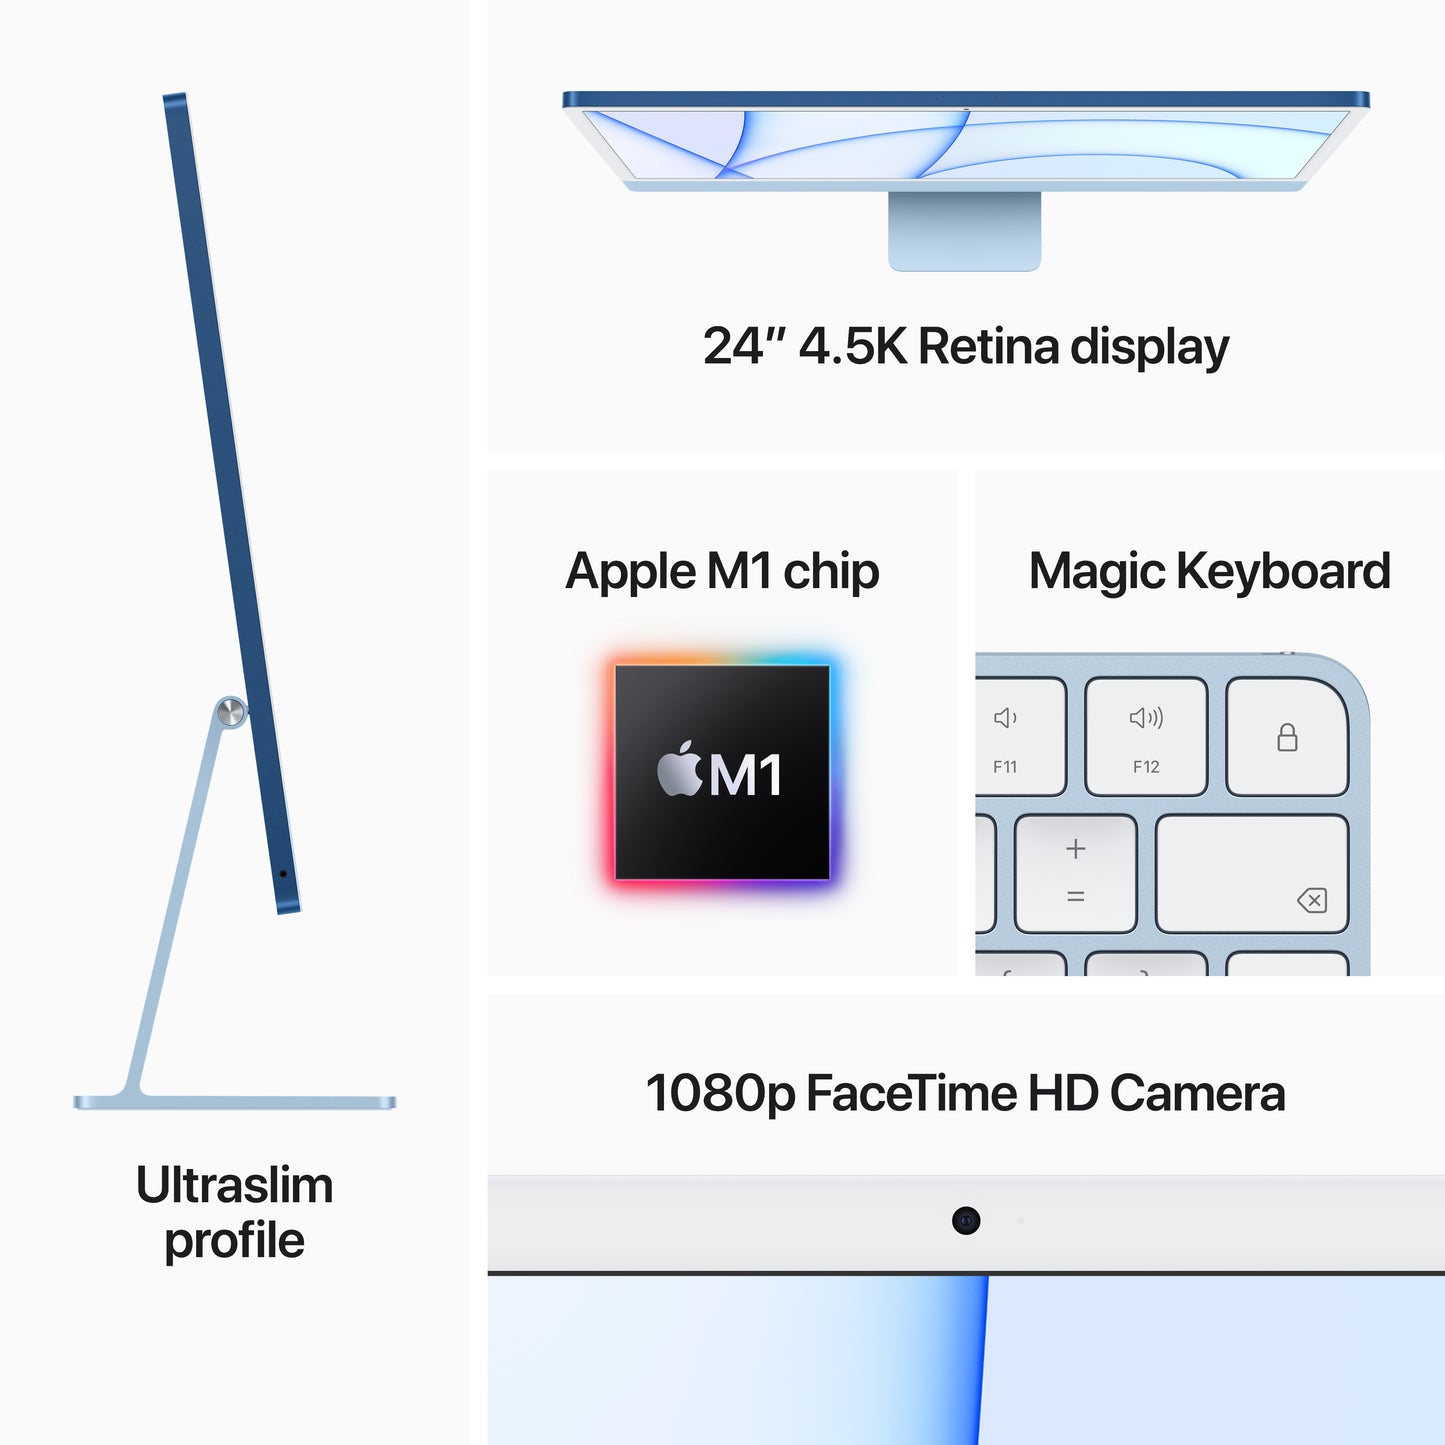 جهاز iMac مقاس 24 انش مع شاشة Retina 4.5K: شريحة Apple M1 مع وحدة معالجة مركزية 8 نوى ووحدة معالجة الرسومات 7 نوى، 256 جيجابايت - أخضر